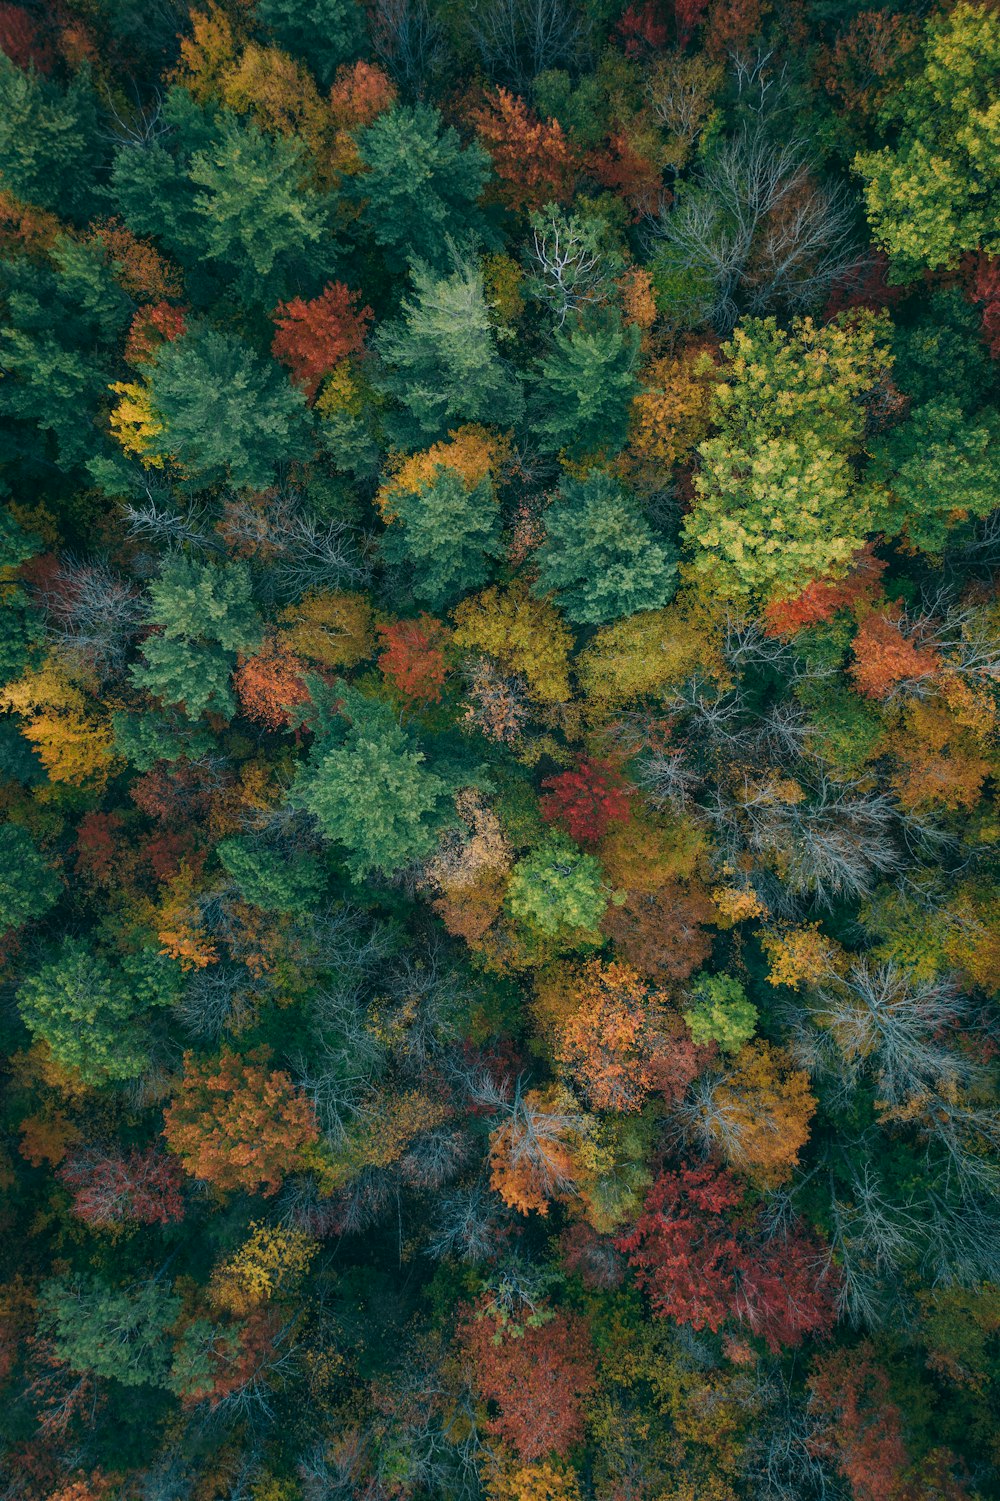 Un bosque lleno de muchos árboles de diferentes colores